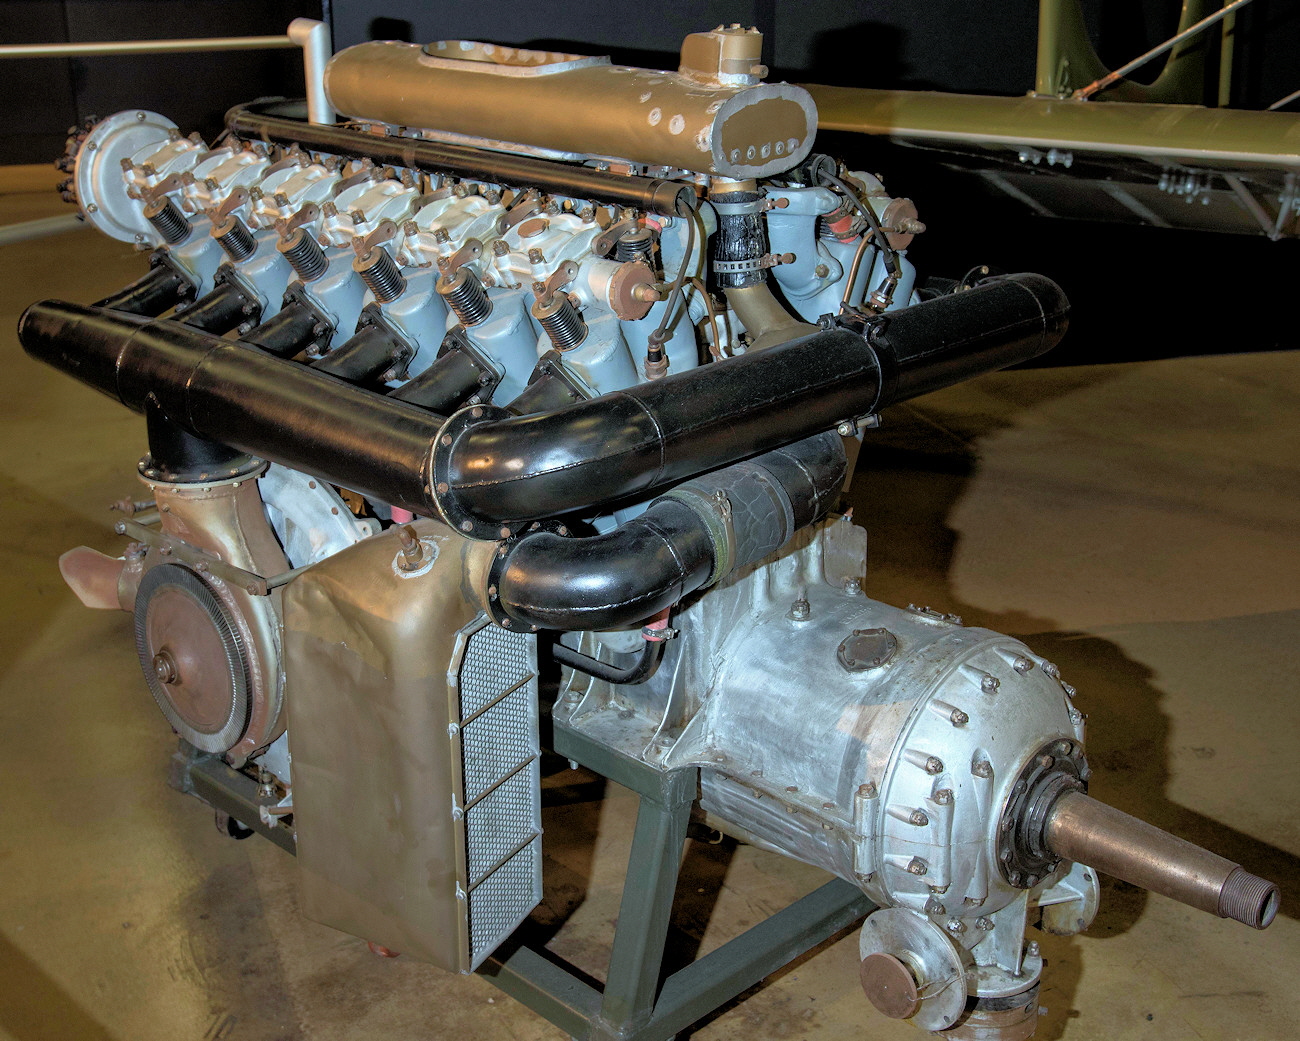 Liberty L-12, flüssigkeitsgekühlter V12-Motor mit 425 PS